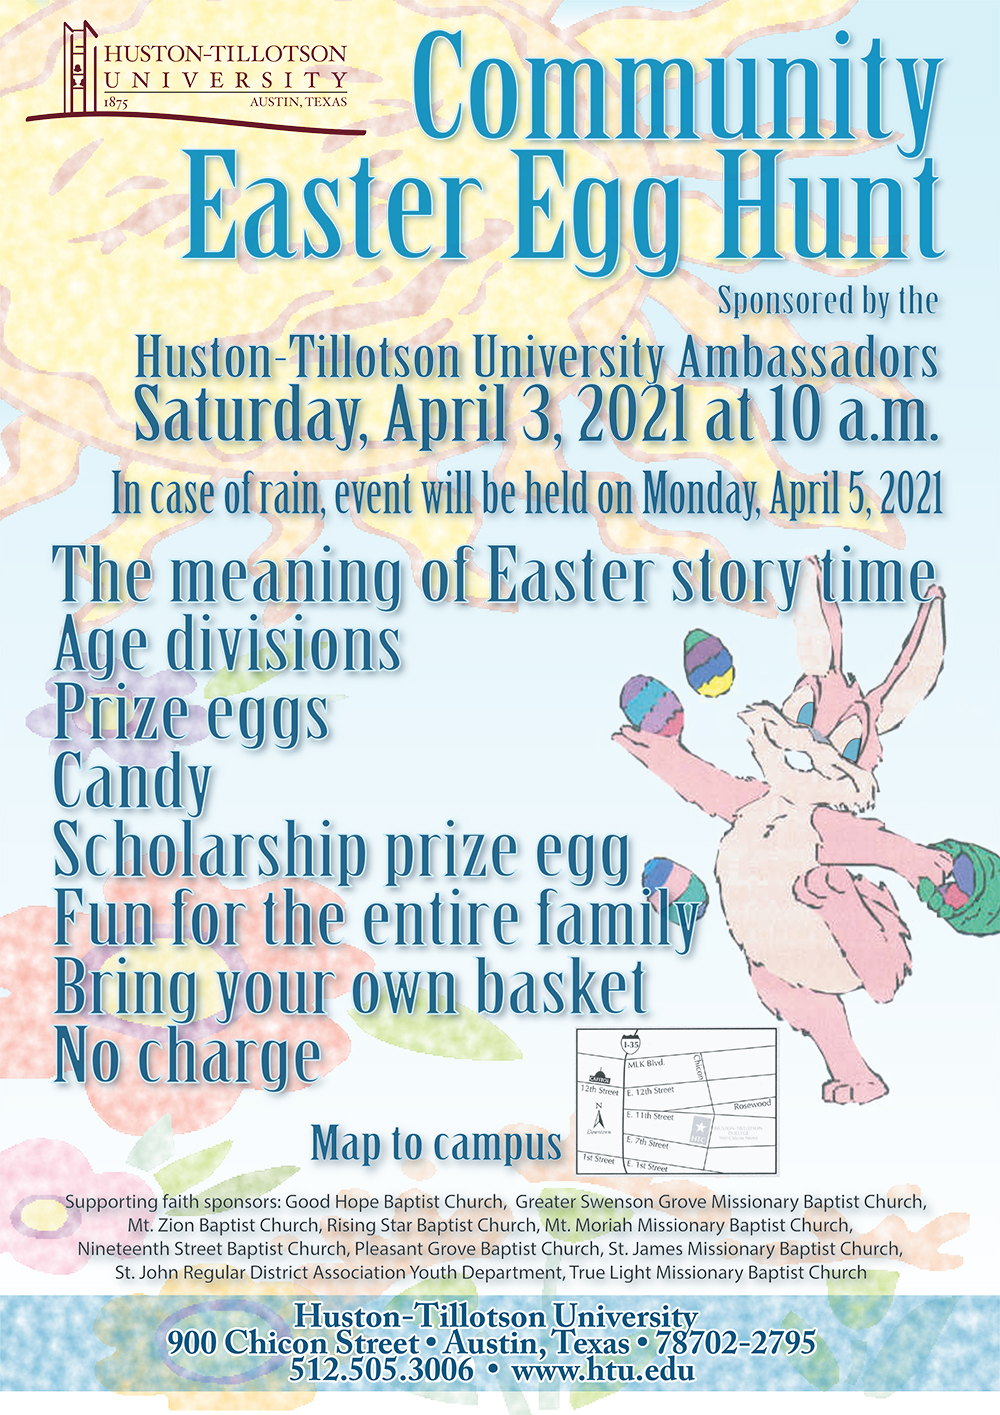 Community Easter Egg Hunt Huston Tillotson